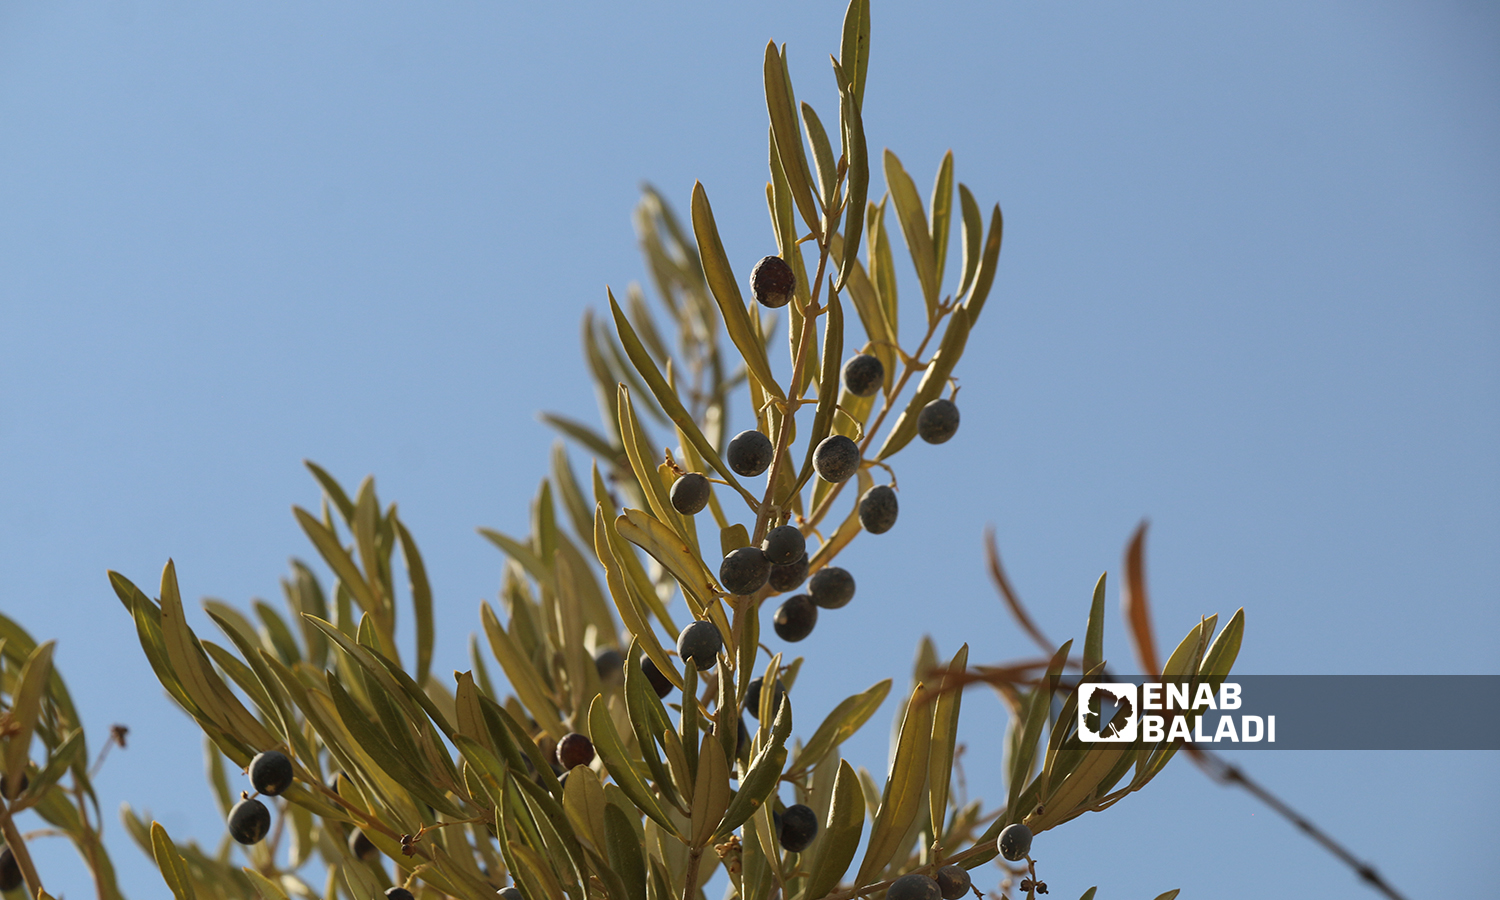 ثمار شجرة الزيتون في كفرعروق بريف إدلب  12 تشرين الأول 2021 (عنب بلدي - إياد عبد الجواد)
